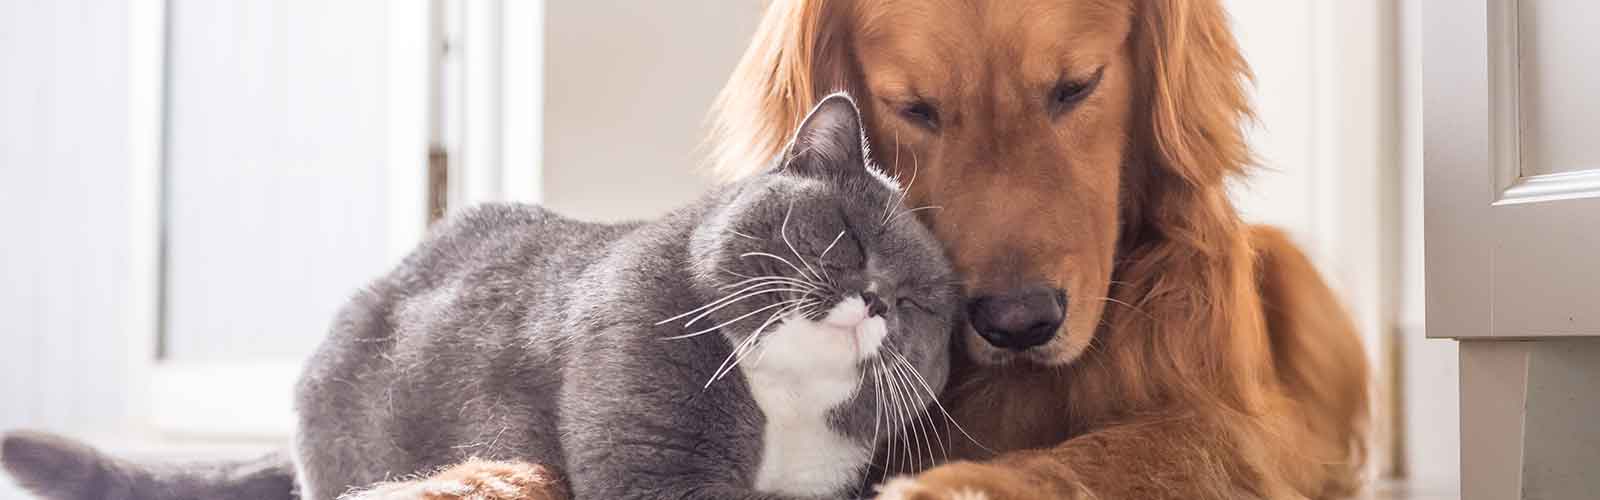 Symbolbild: Hund und Katze. Beide sind potenziell durch den Gurkenkernbandwurm gefährdet.